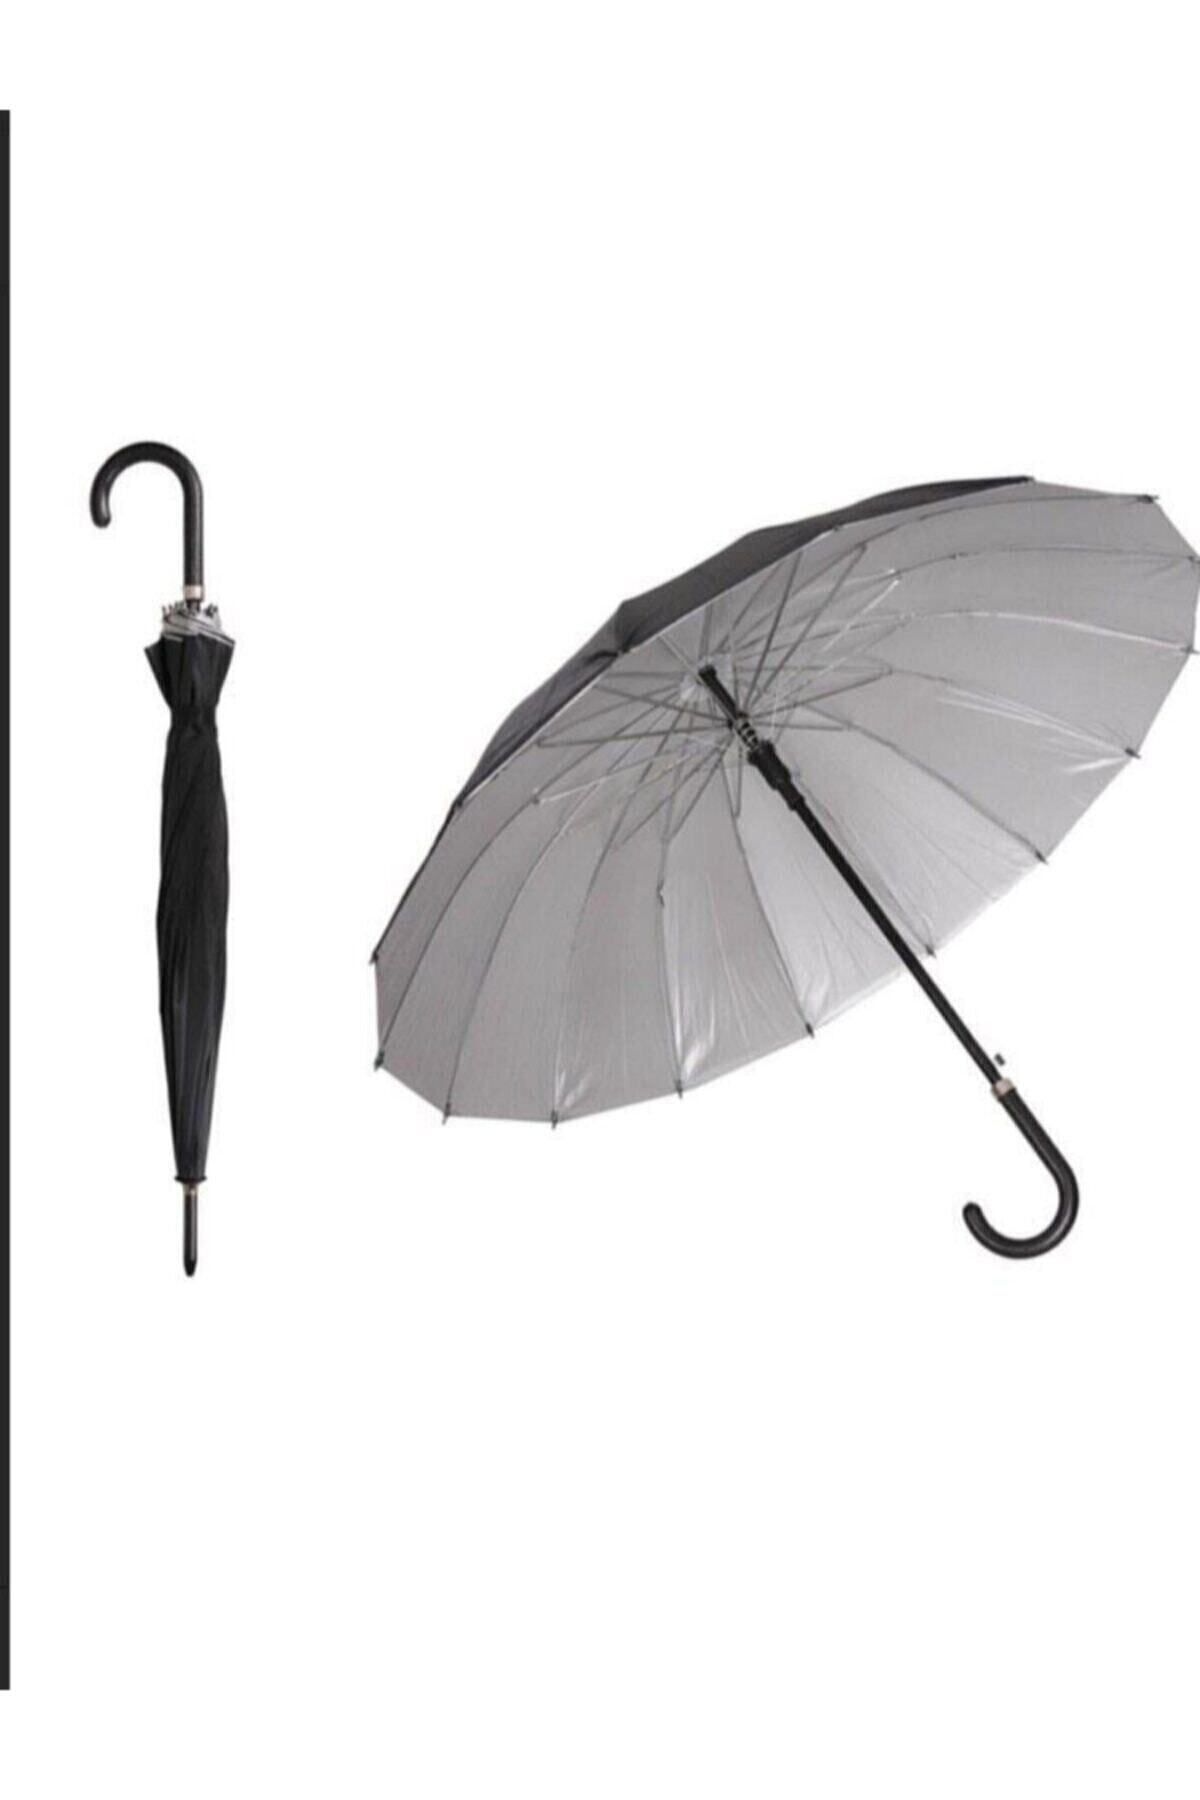 Mavi Şemsiye 16 Telli Dışı Siyah Içi Gümüş Renk,baston Şemsiye 555-1